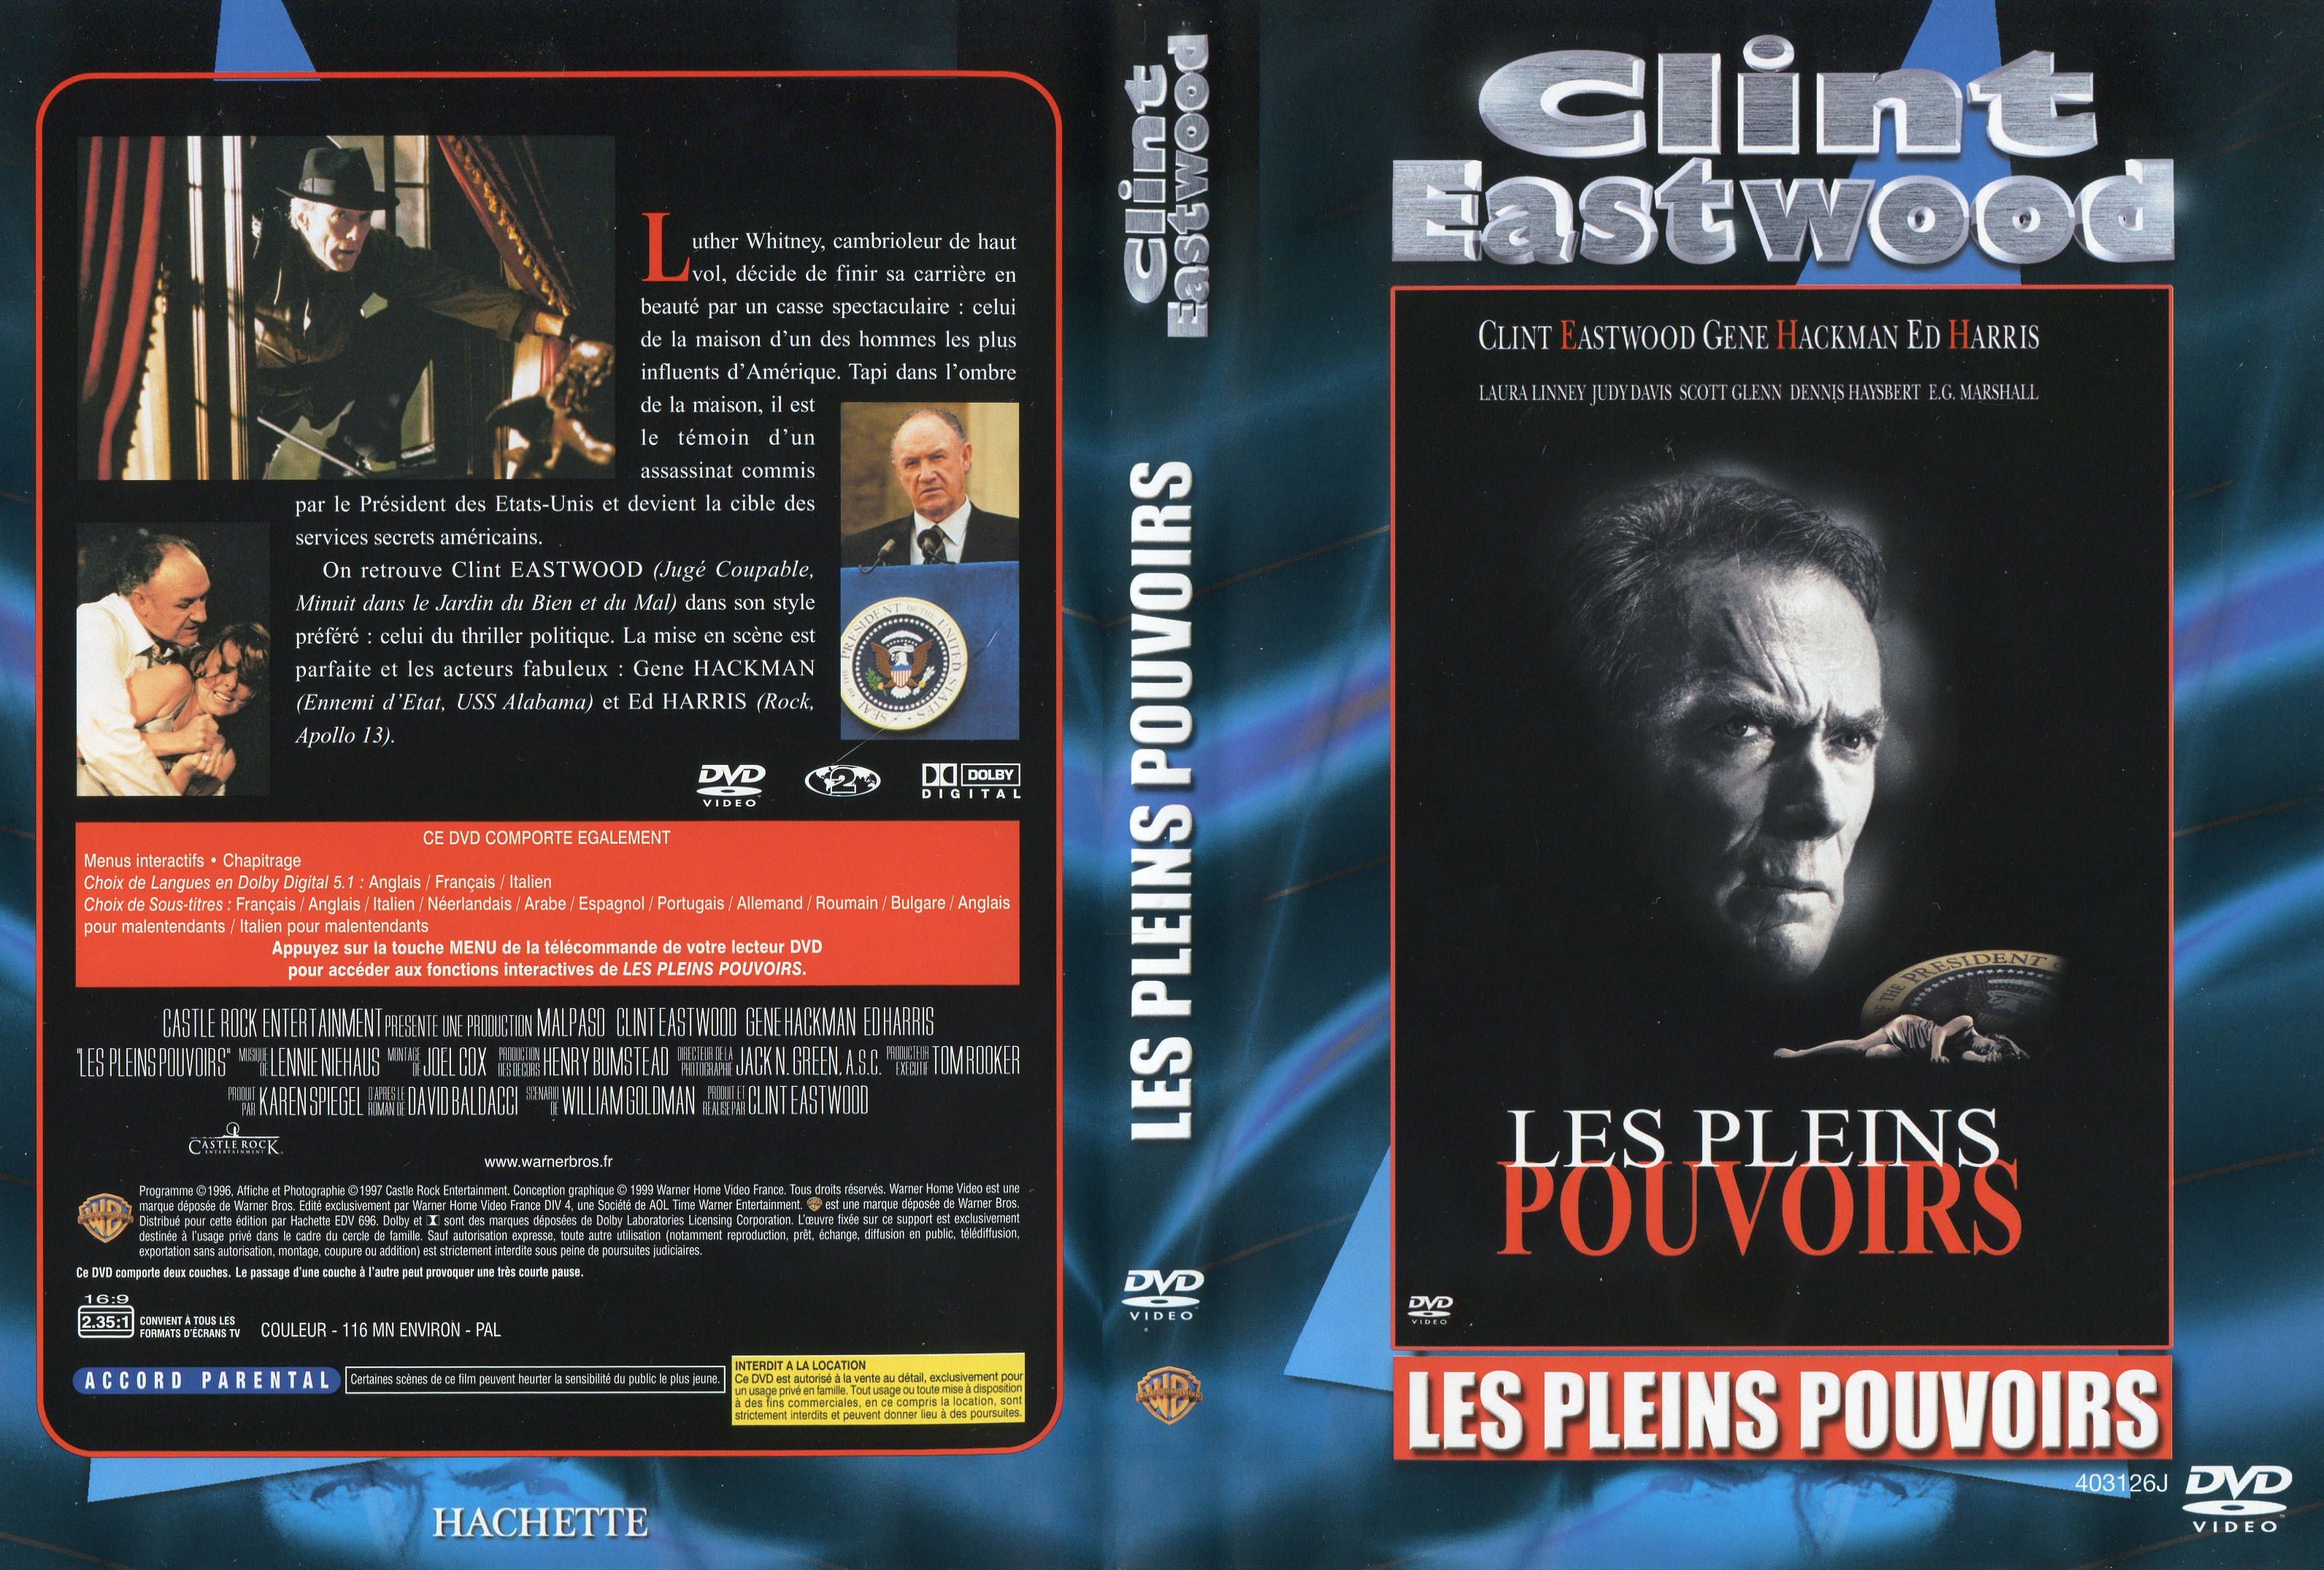 Jaquette DVD Les pleins pouvoirs v3